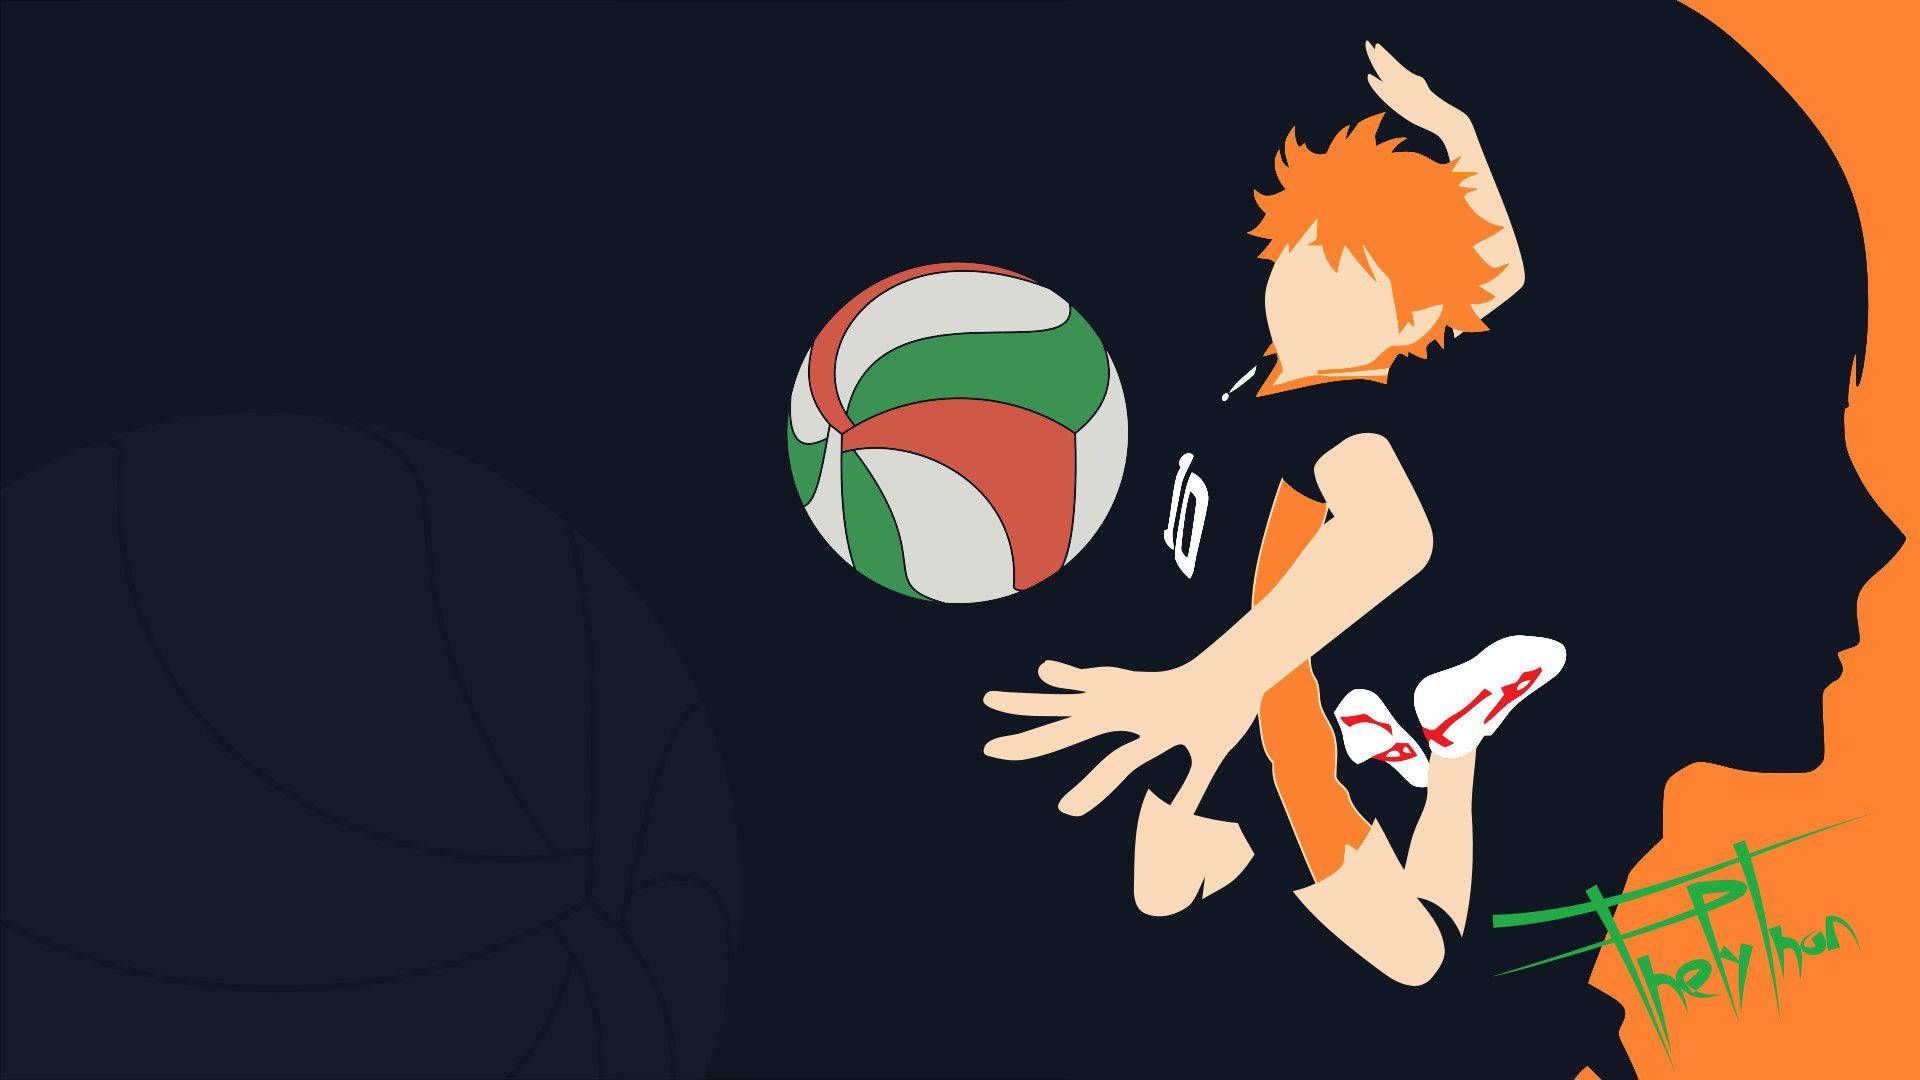 Hinatashouyou, El Apasionado Jugador De Voleibol Determinado A Alcanzar Sus Sueños. Fondo de pantalla